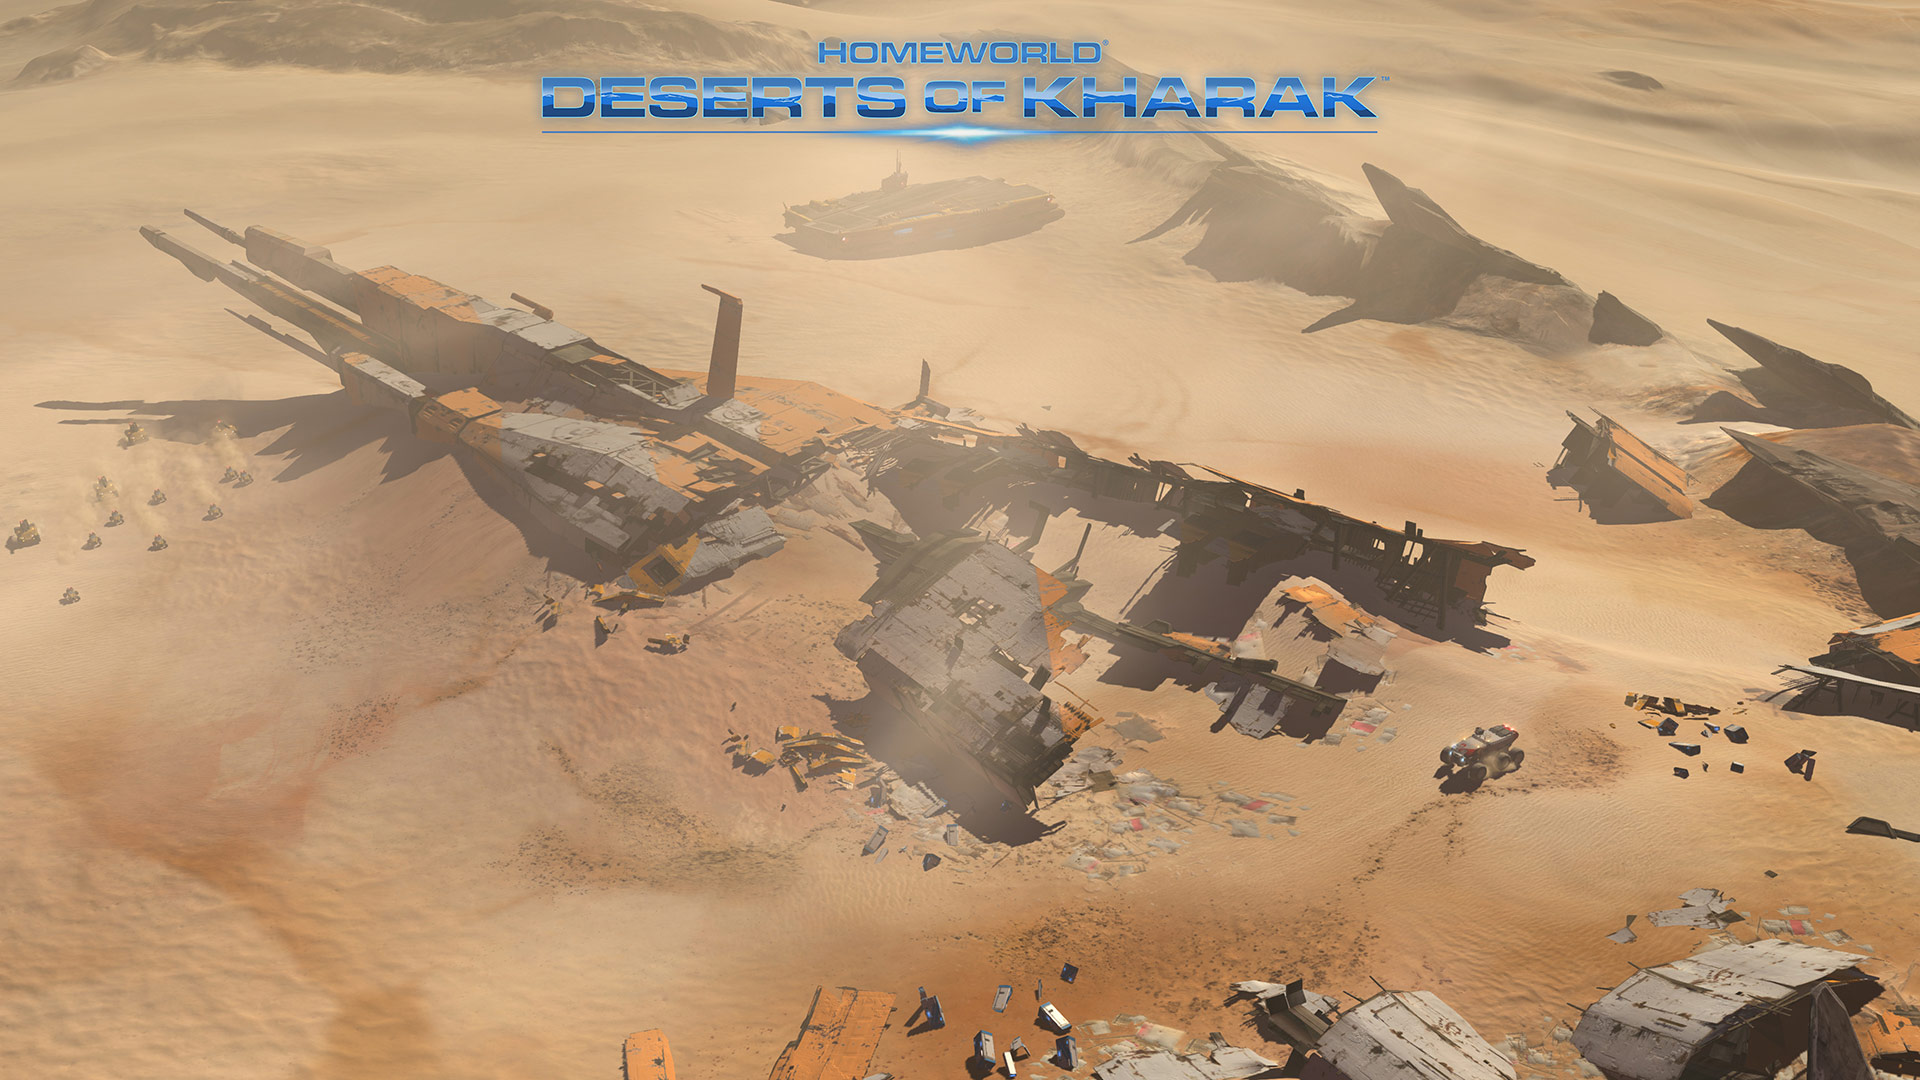 Los mejores fondos de pantalla de Homeworld: Deserts Of Kharak para la pantalla del teléfono